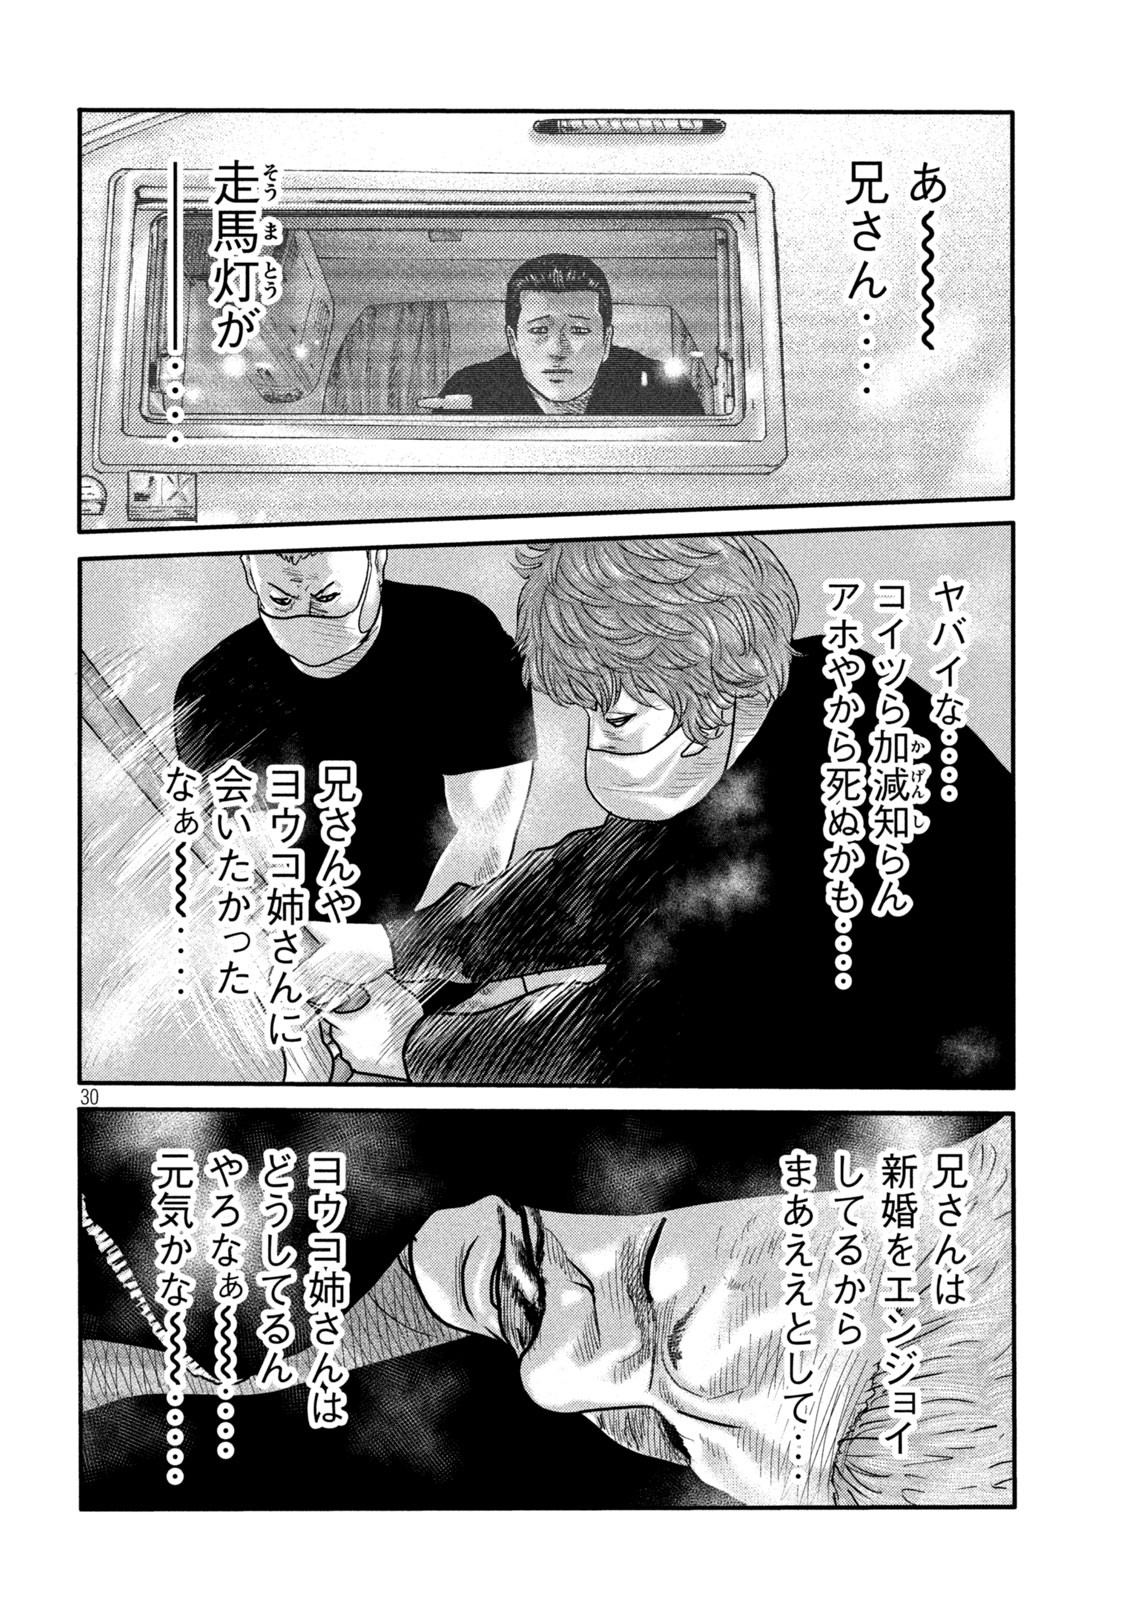 ザ・ファブル The Second Contact 第2話 - Page 30